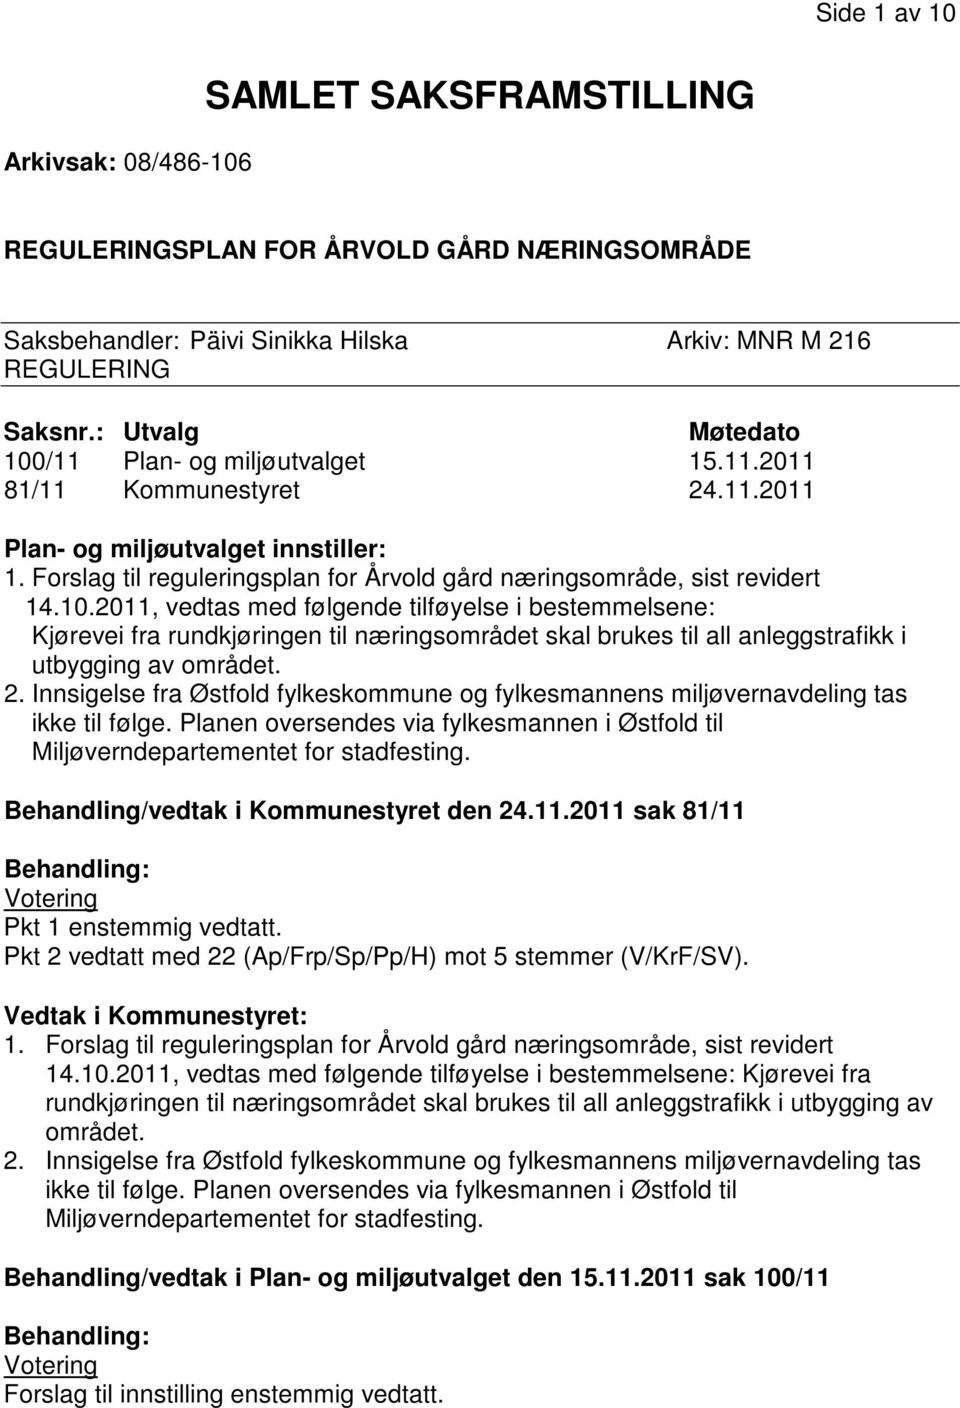 Forslag til reguleringsplan for Årvold gård næringsområde, sist revidert 14.10.